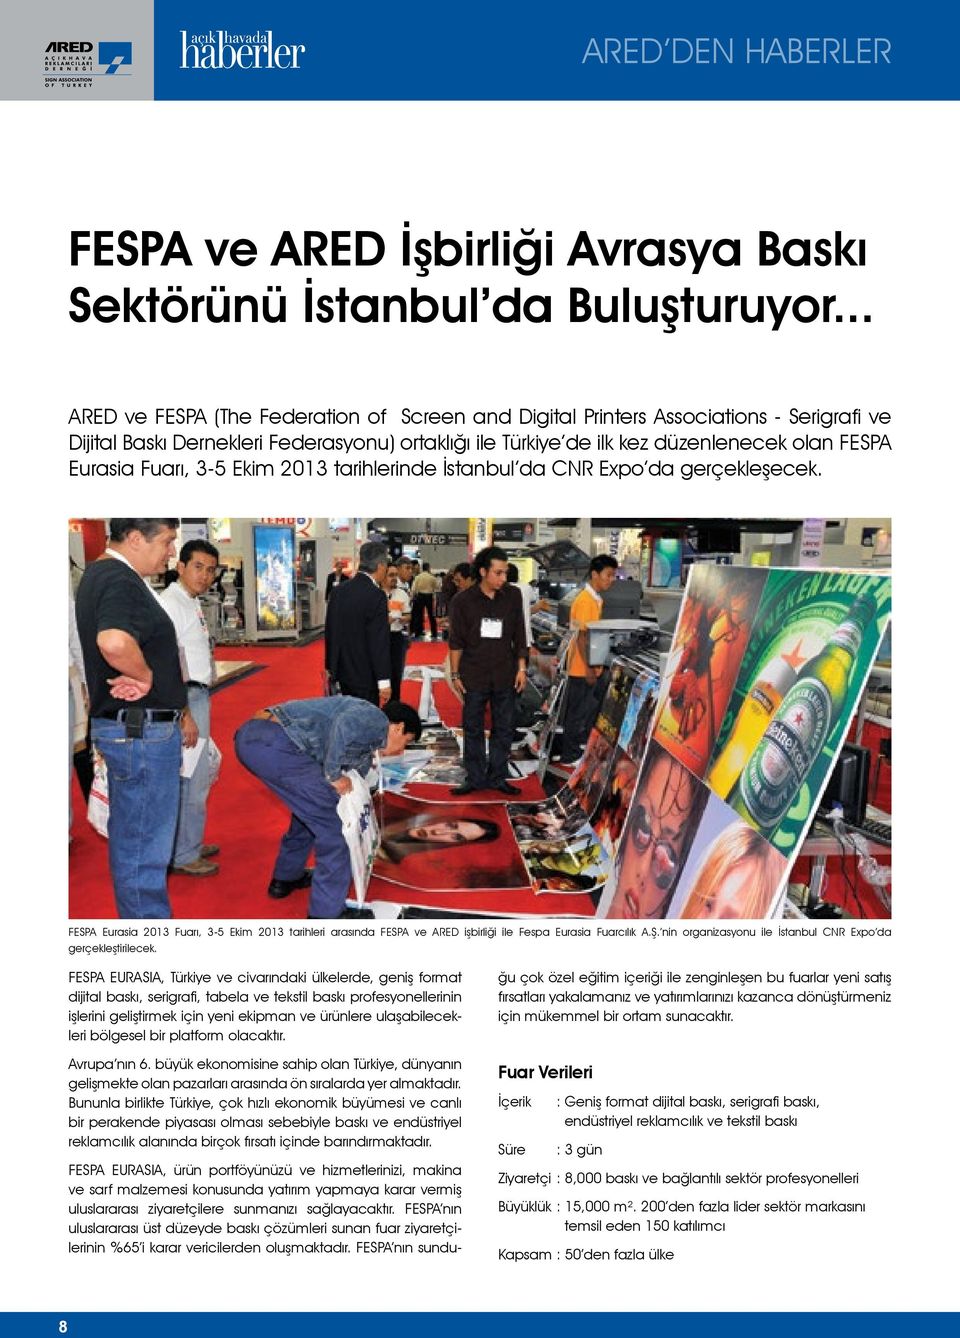 Fuarı, 3-5 Ekim 2013 tarihlerinde İstanbul da CNR Expo da gerçekleşecek. FESPA Eurasia 2013 Fuarı, 3-5 Ekim 2013 tarihleri arasında FESPA ve ARED işbirliği ile Fespa Eurasia Fuarcılık A.Ş.